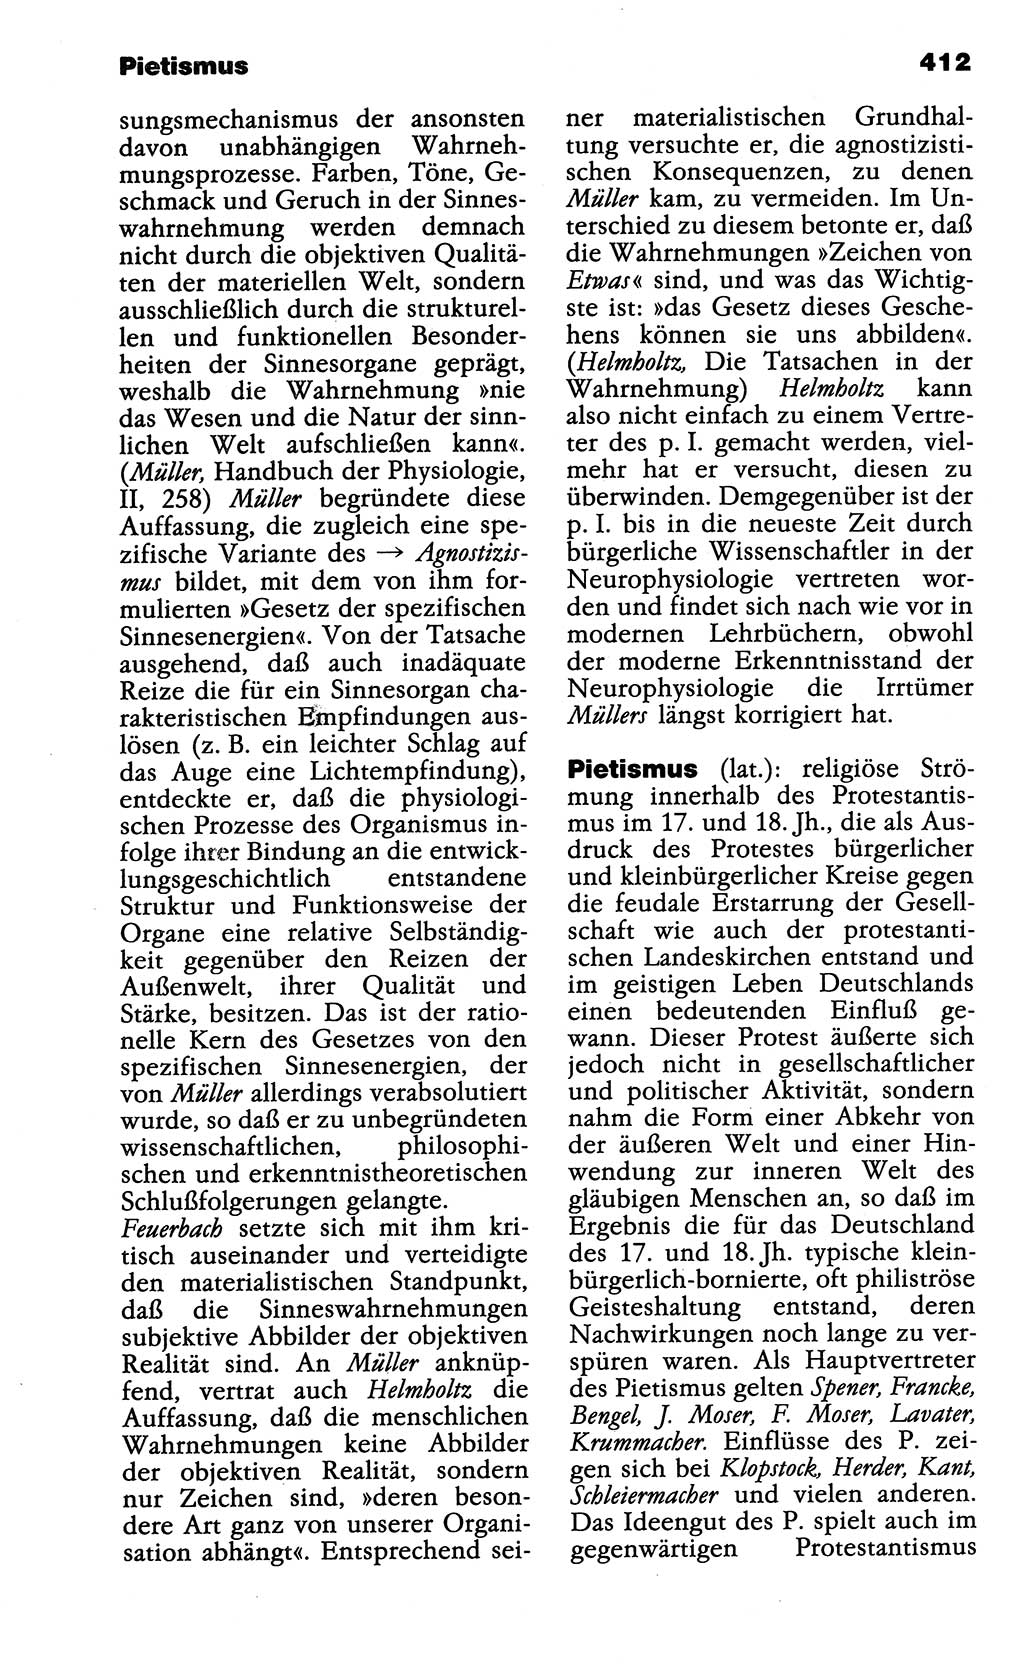 Wörterbuch der marxistisch-leninistischen Philosophie [Deutsche Demokratische Republik (DDR)] 1985, Seite 412 (Wb. ML Phil. DDR 1985, S. 412)